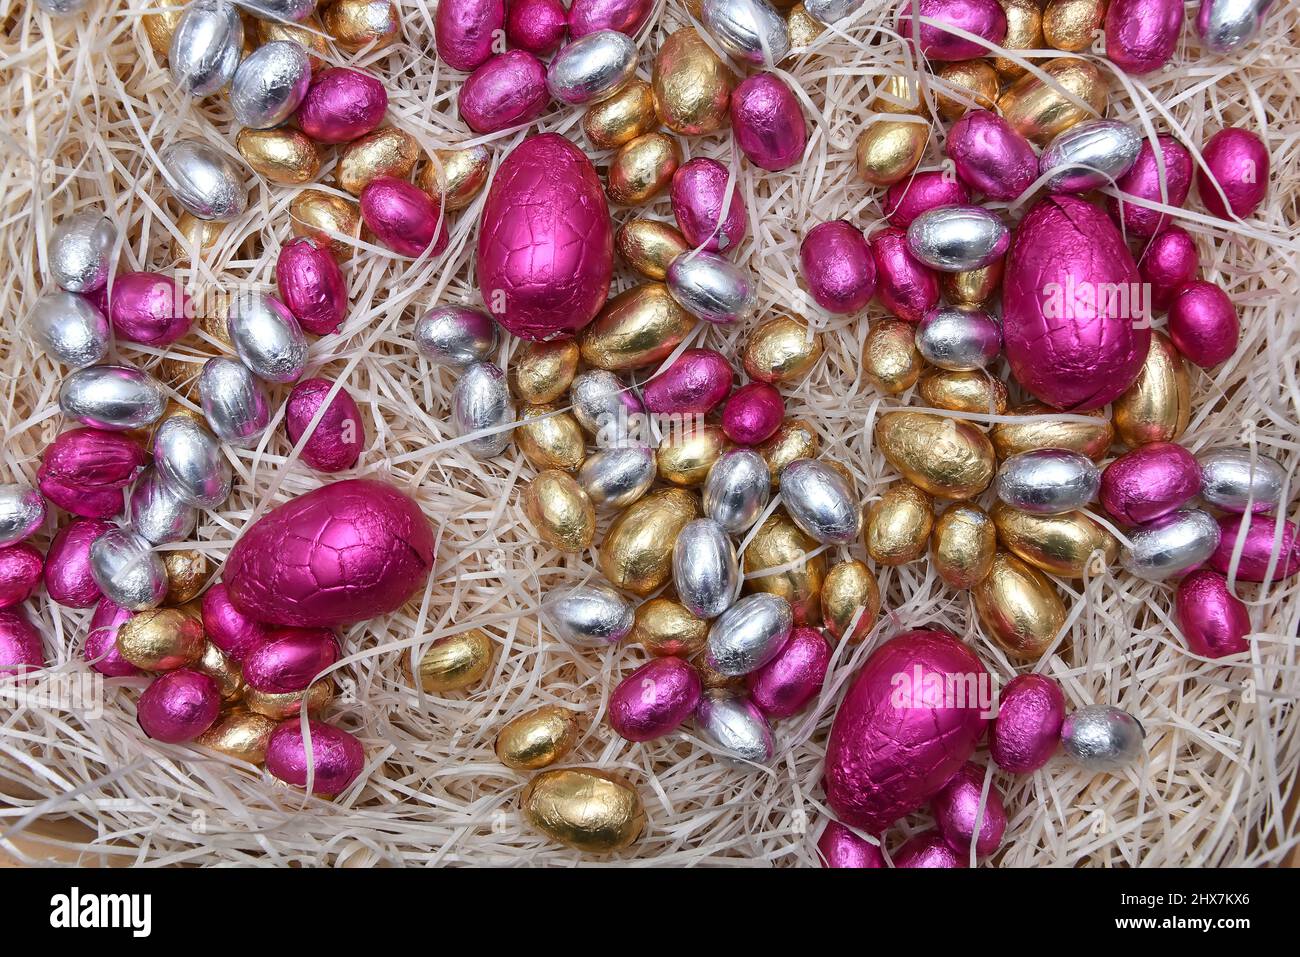 Stapel von bunten, blassen Pastellfolie umwickelten schokoladenöstereiern in Rosa, Silber und Gold auf einem blaßgefürchteten Rahmennest. Stockfoto